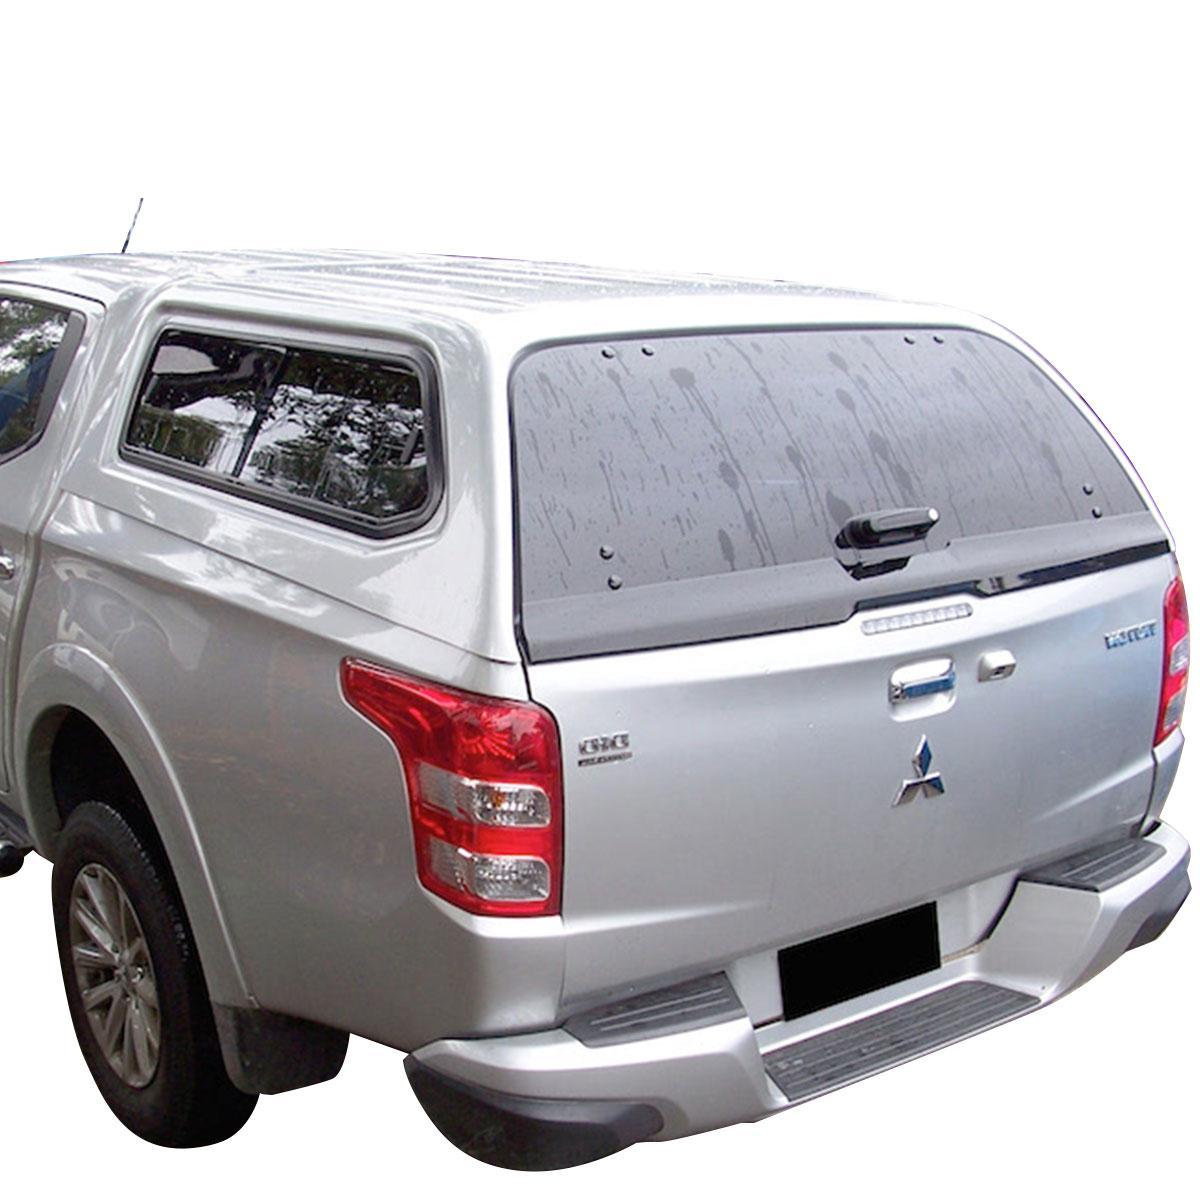 Fensterheber für Mitsubishi L200 günstig bestellen